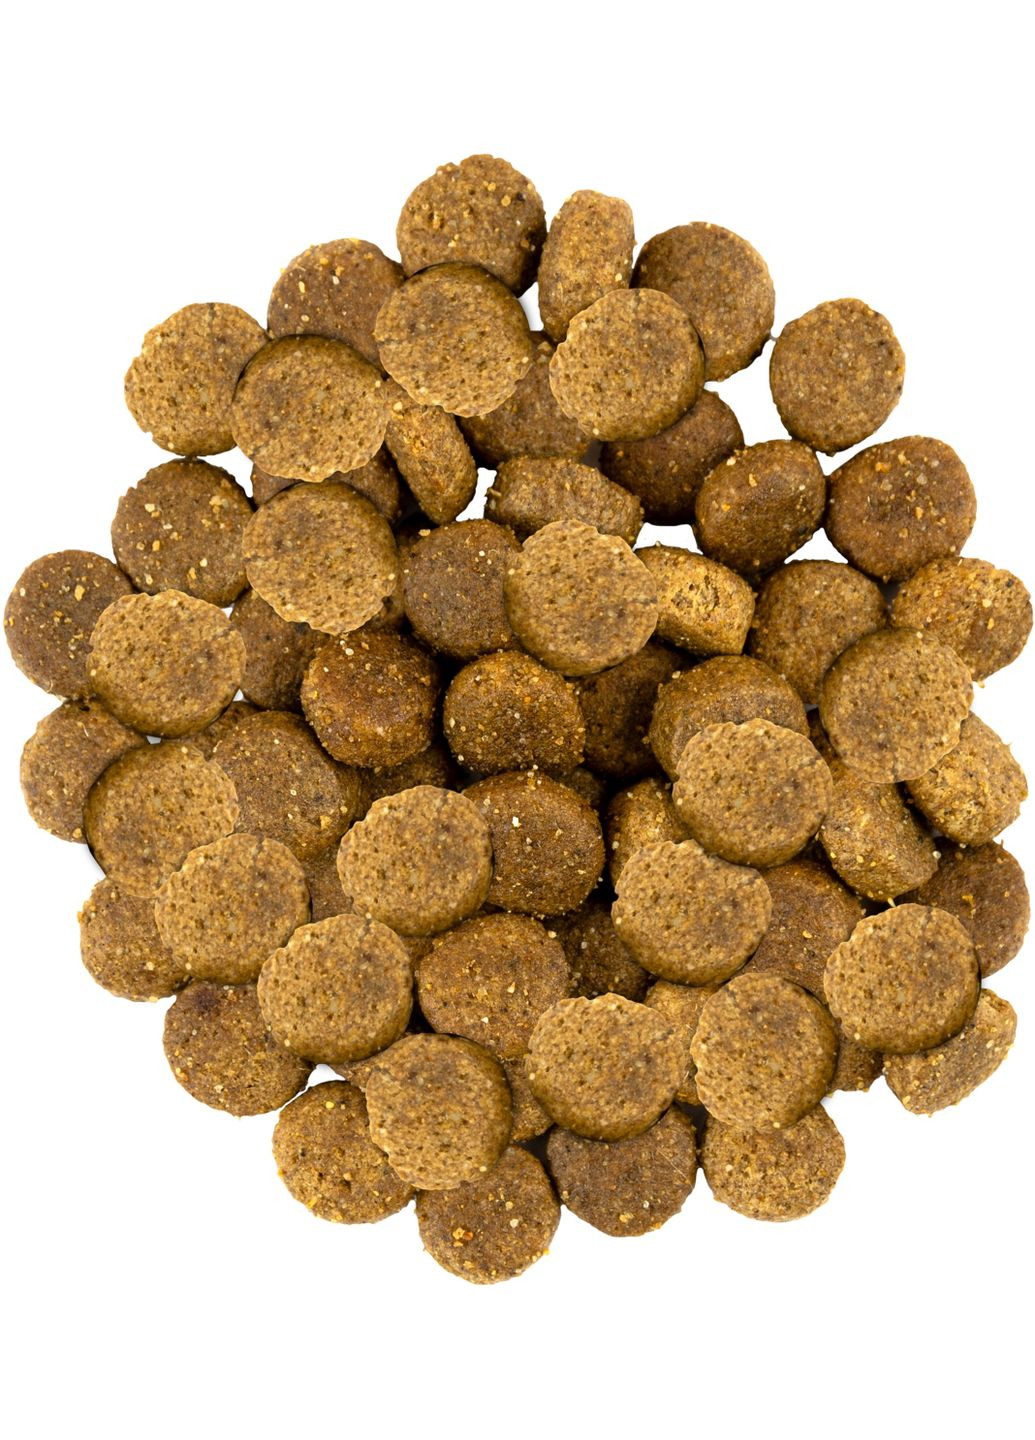 Сухий корм для собак середніх порід зі свіжим м'ясом індички та ягняти 1 кг (30259) Savory (279571944)